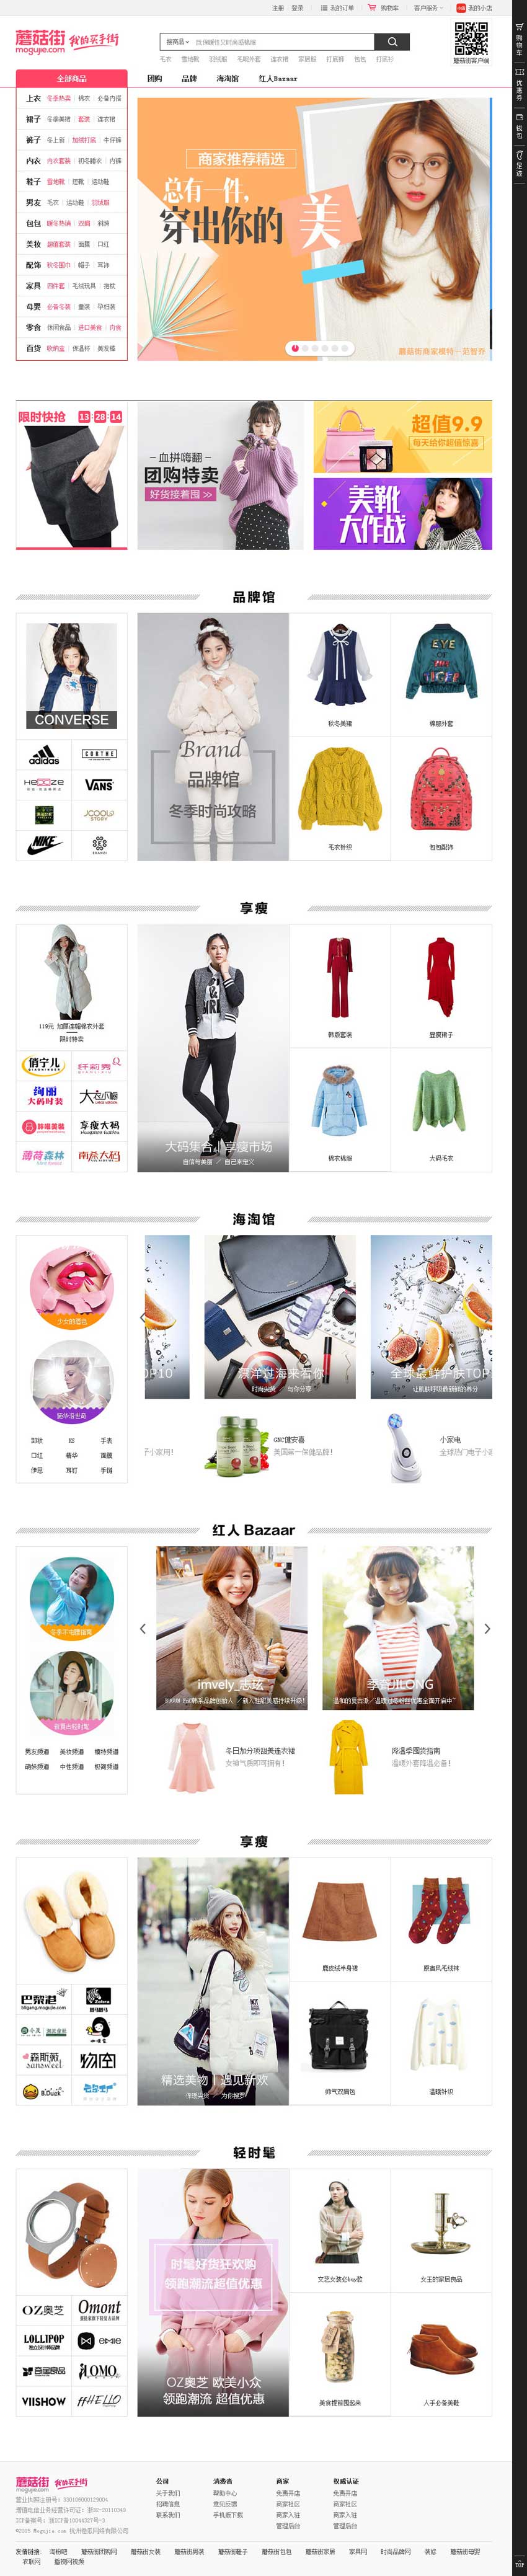 粉色的时尚购物蘑菇街商城模板html代码_商城网站模板插图源码资源库